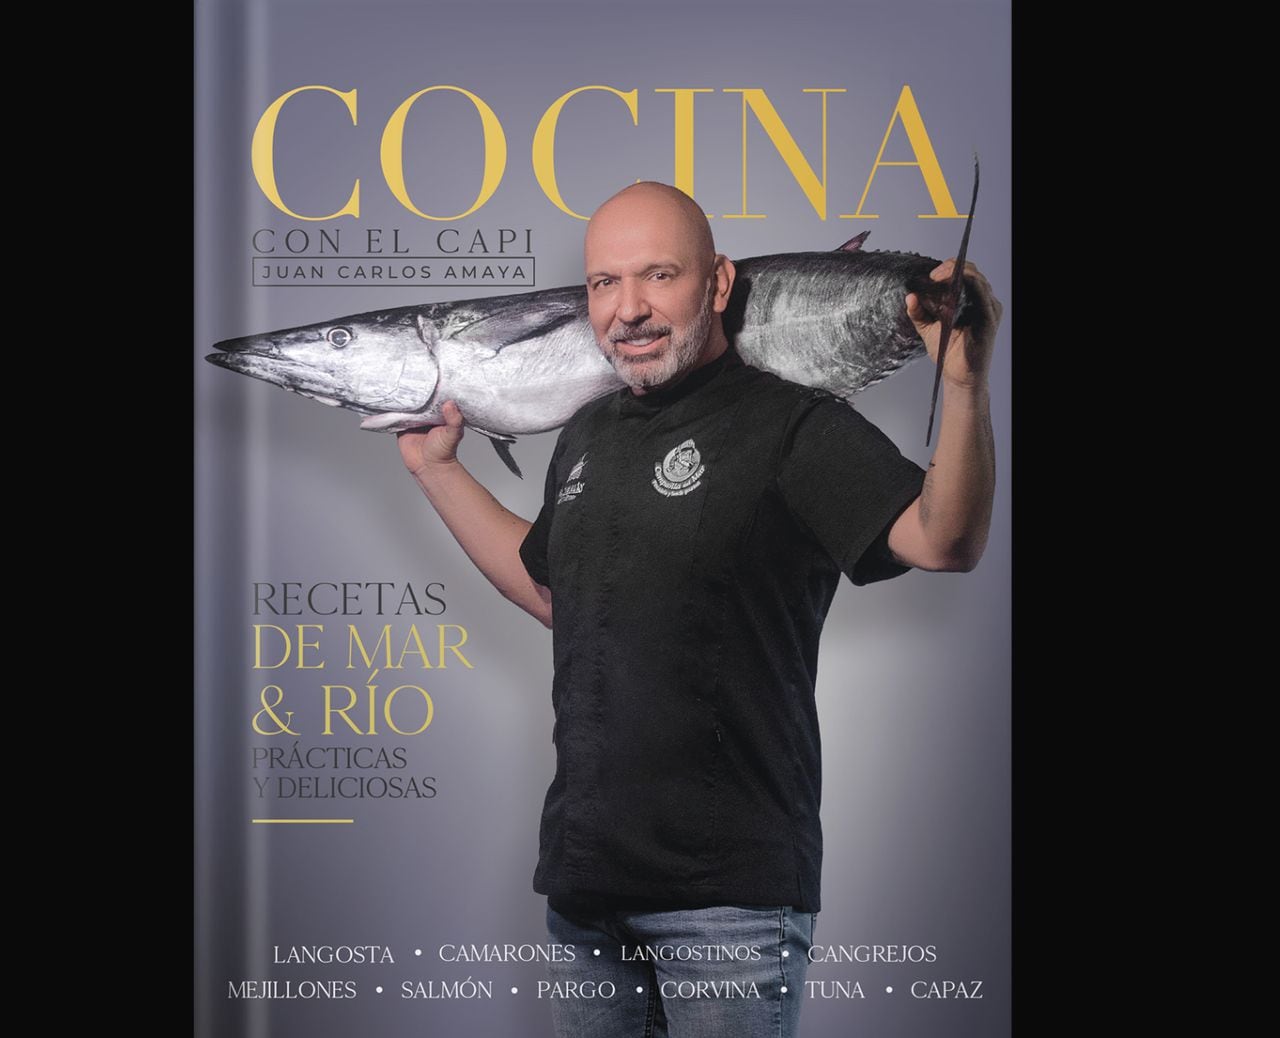 El libro contiene recetas con pescados y mariscos fáciles de preparar, además de información sobre utensilios, técnicas de cocción y otros secretos.